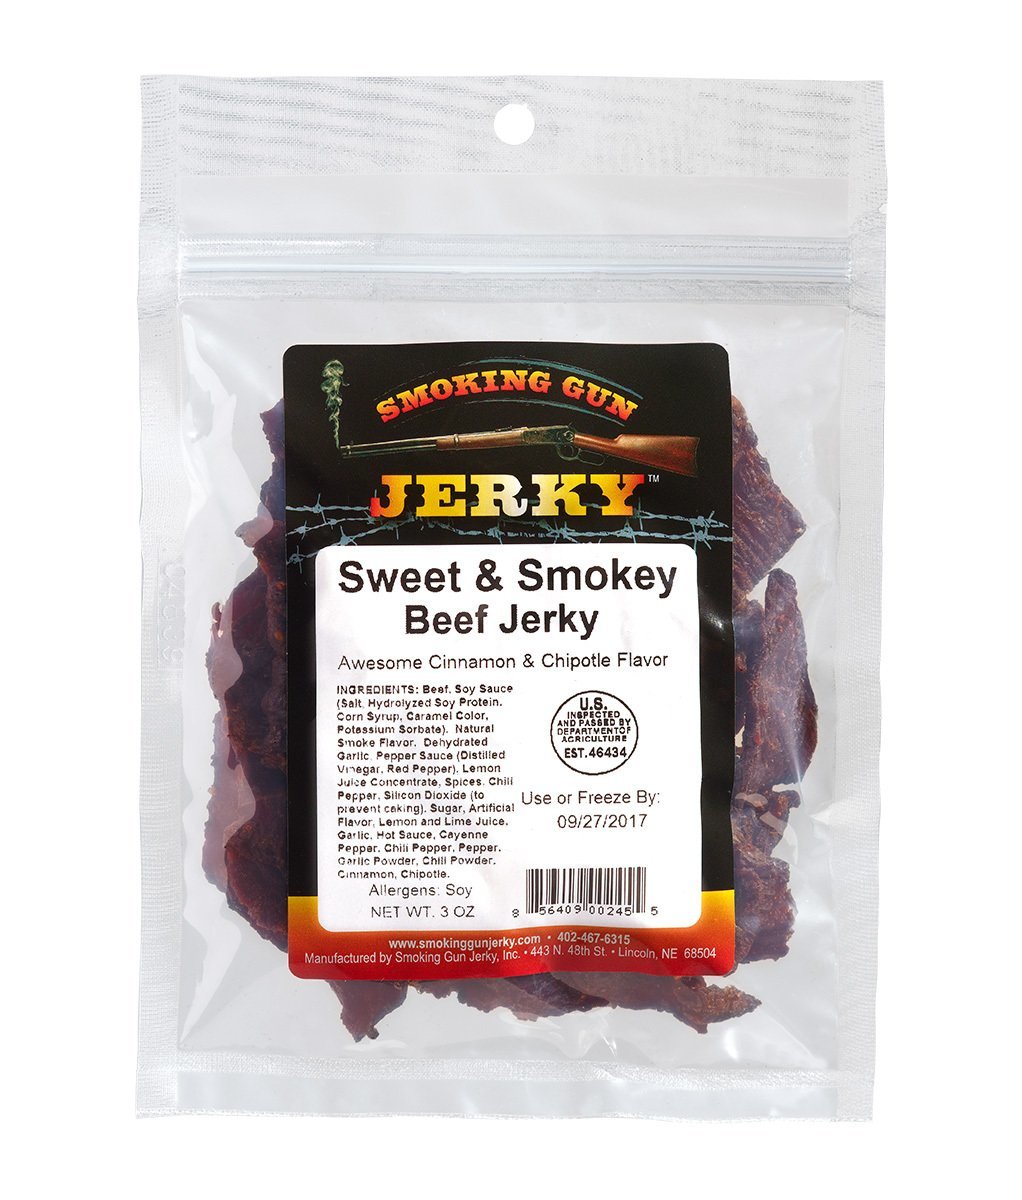 Sweet & Smokey Beef Jerky 2.75 oz. Pkg.